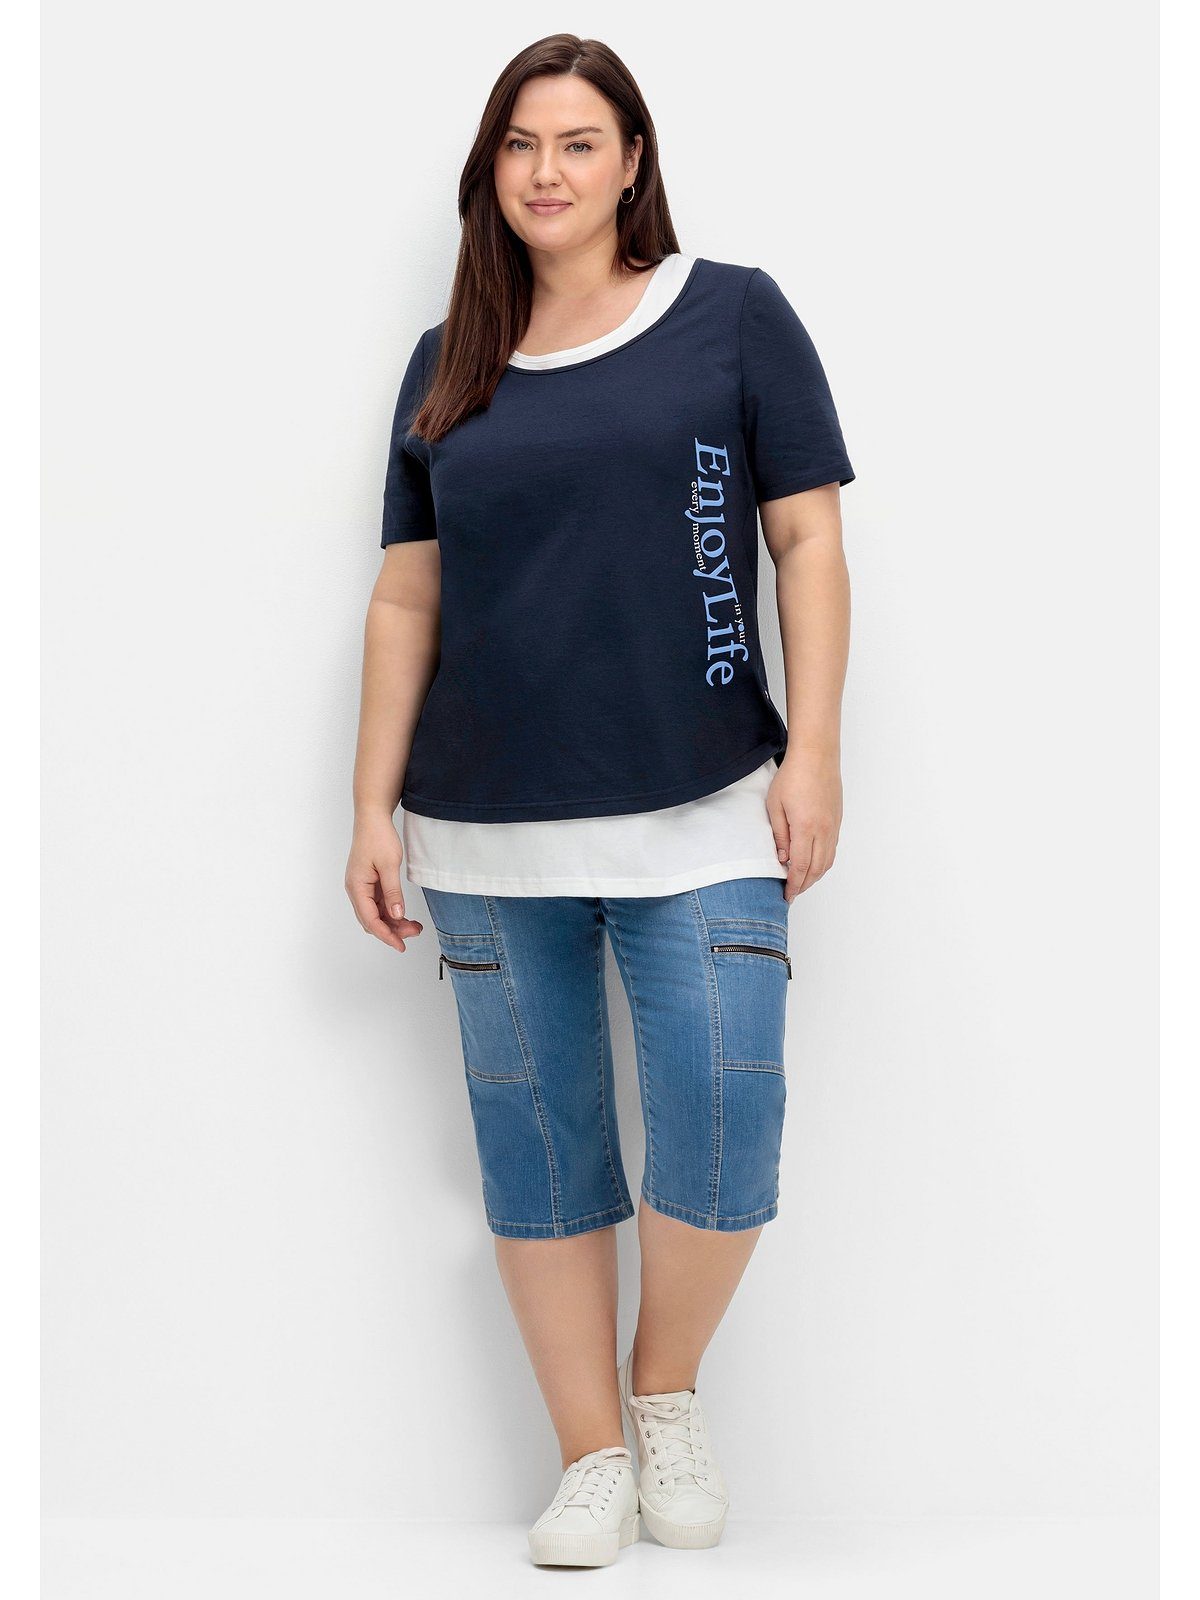 separatem T-Shirt mit Sheego Wordingprint und Größen Top Große